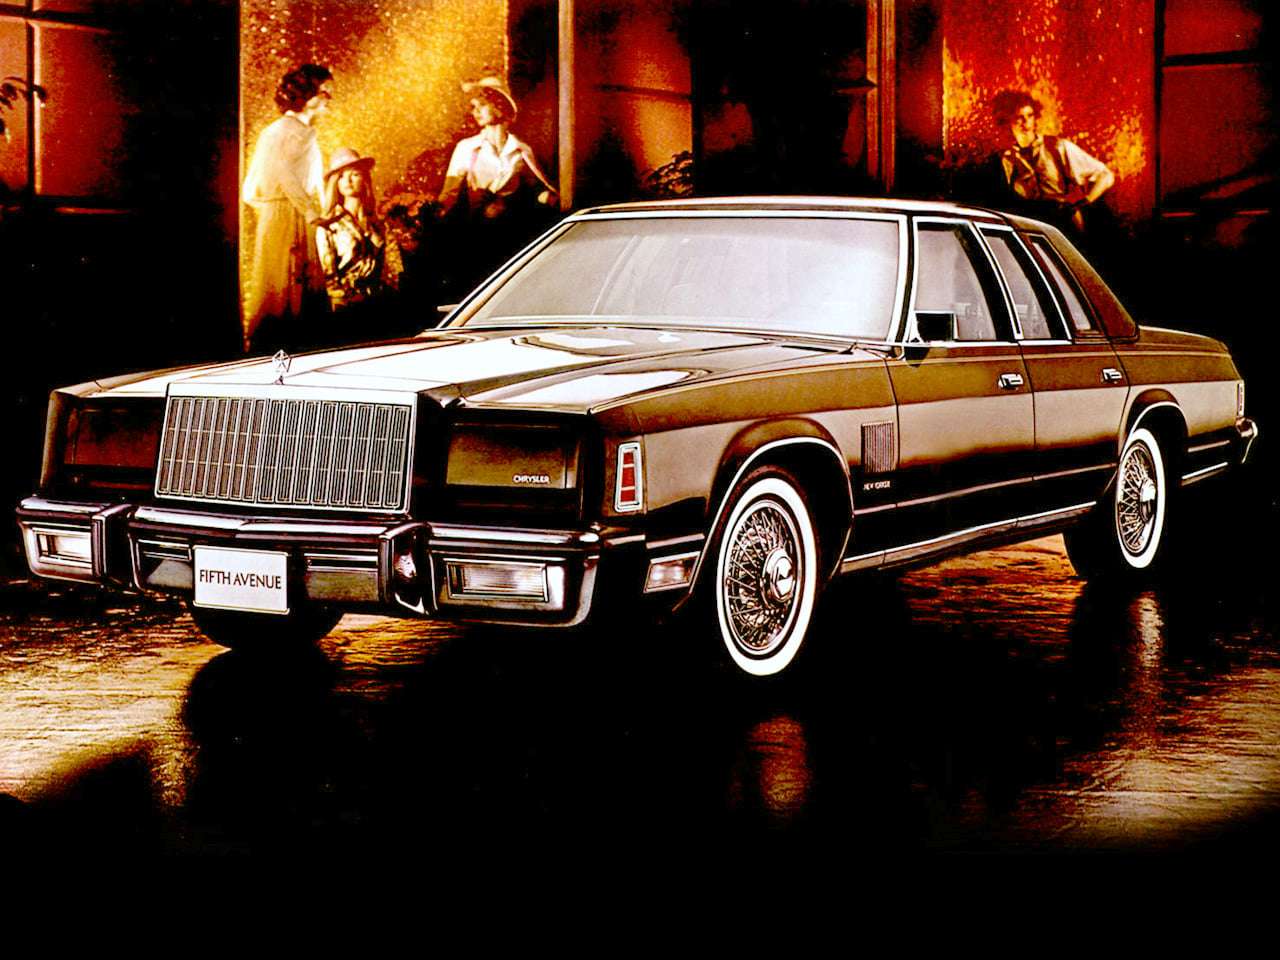 1980 Chrysler New Yorker Fifth Avenue quebra-cabeças online